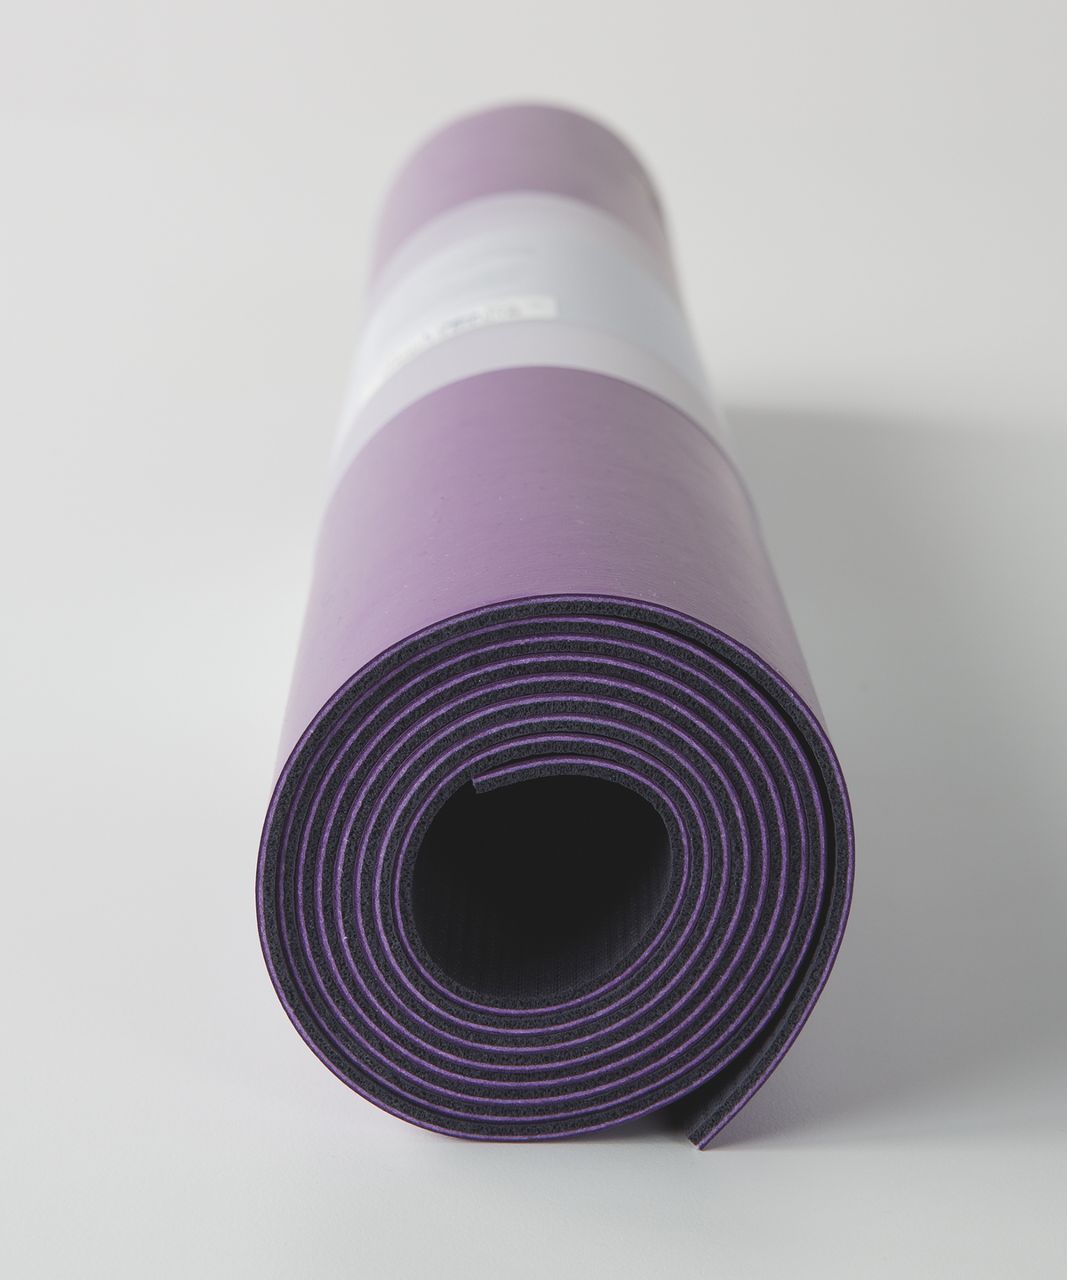 Lululemon The Reversible Mat 3mm - Tender Violet / Black Grape